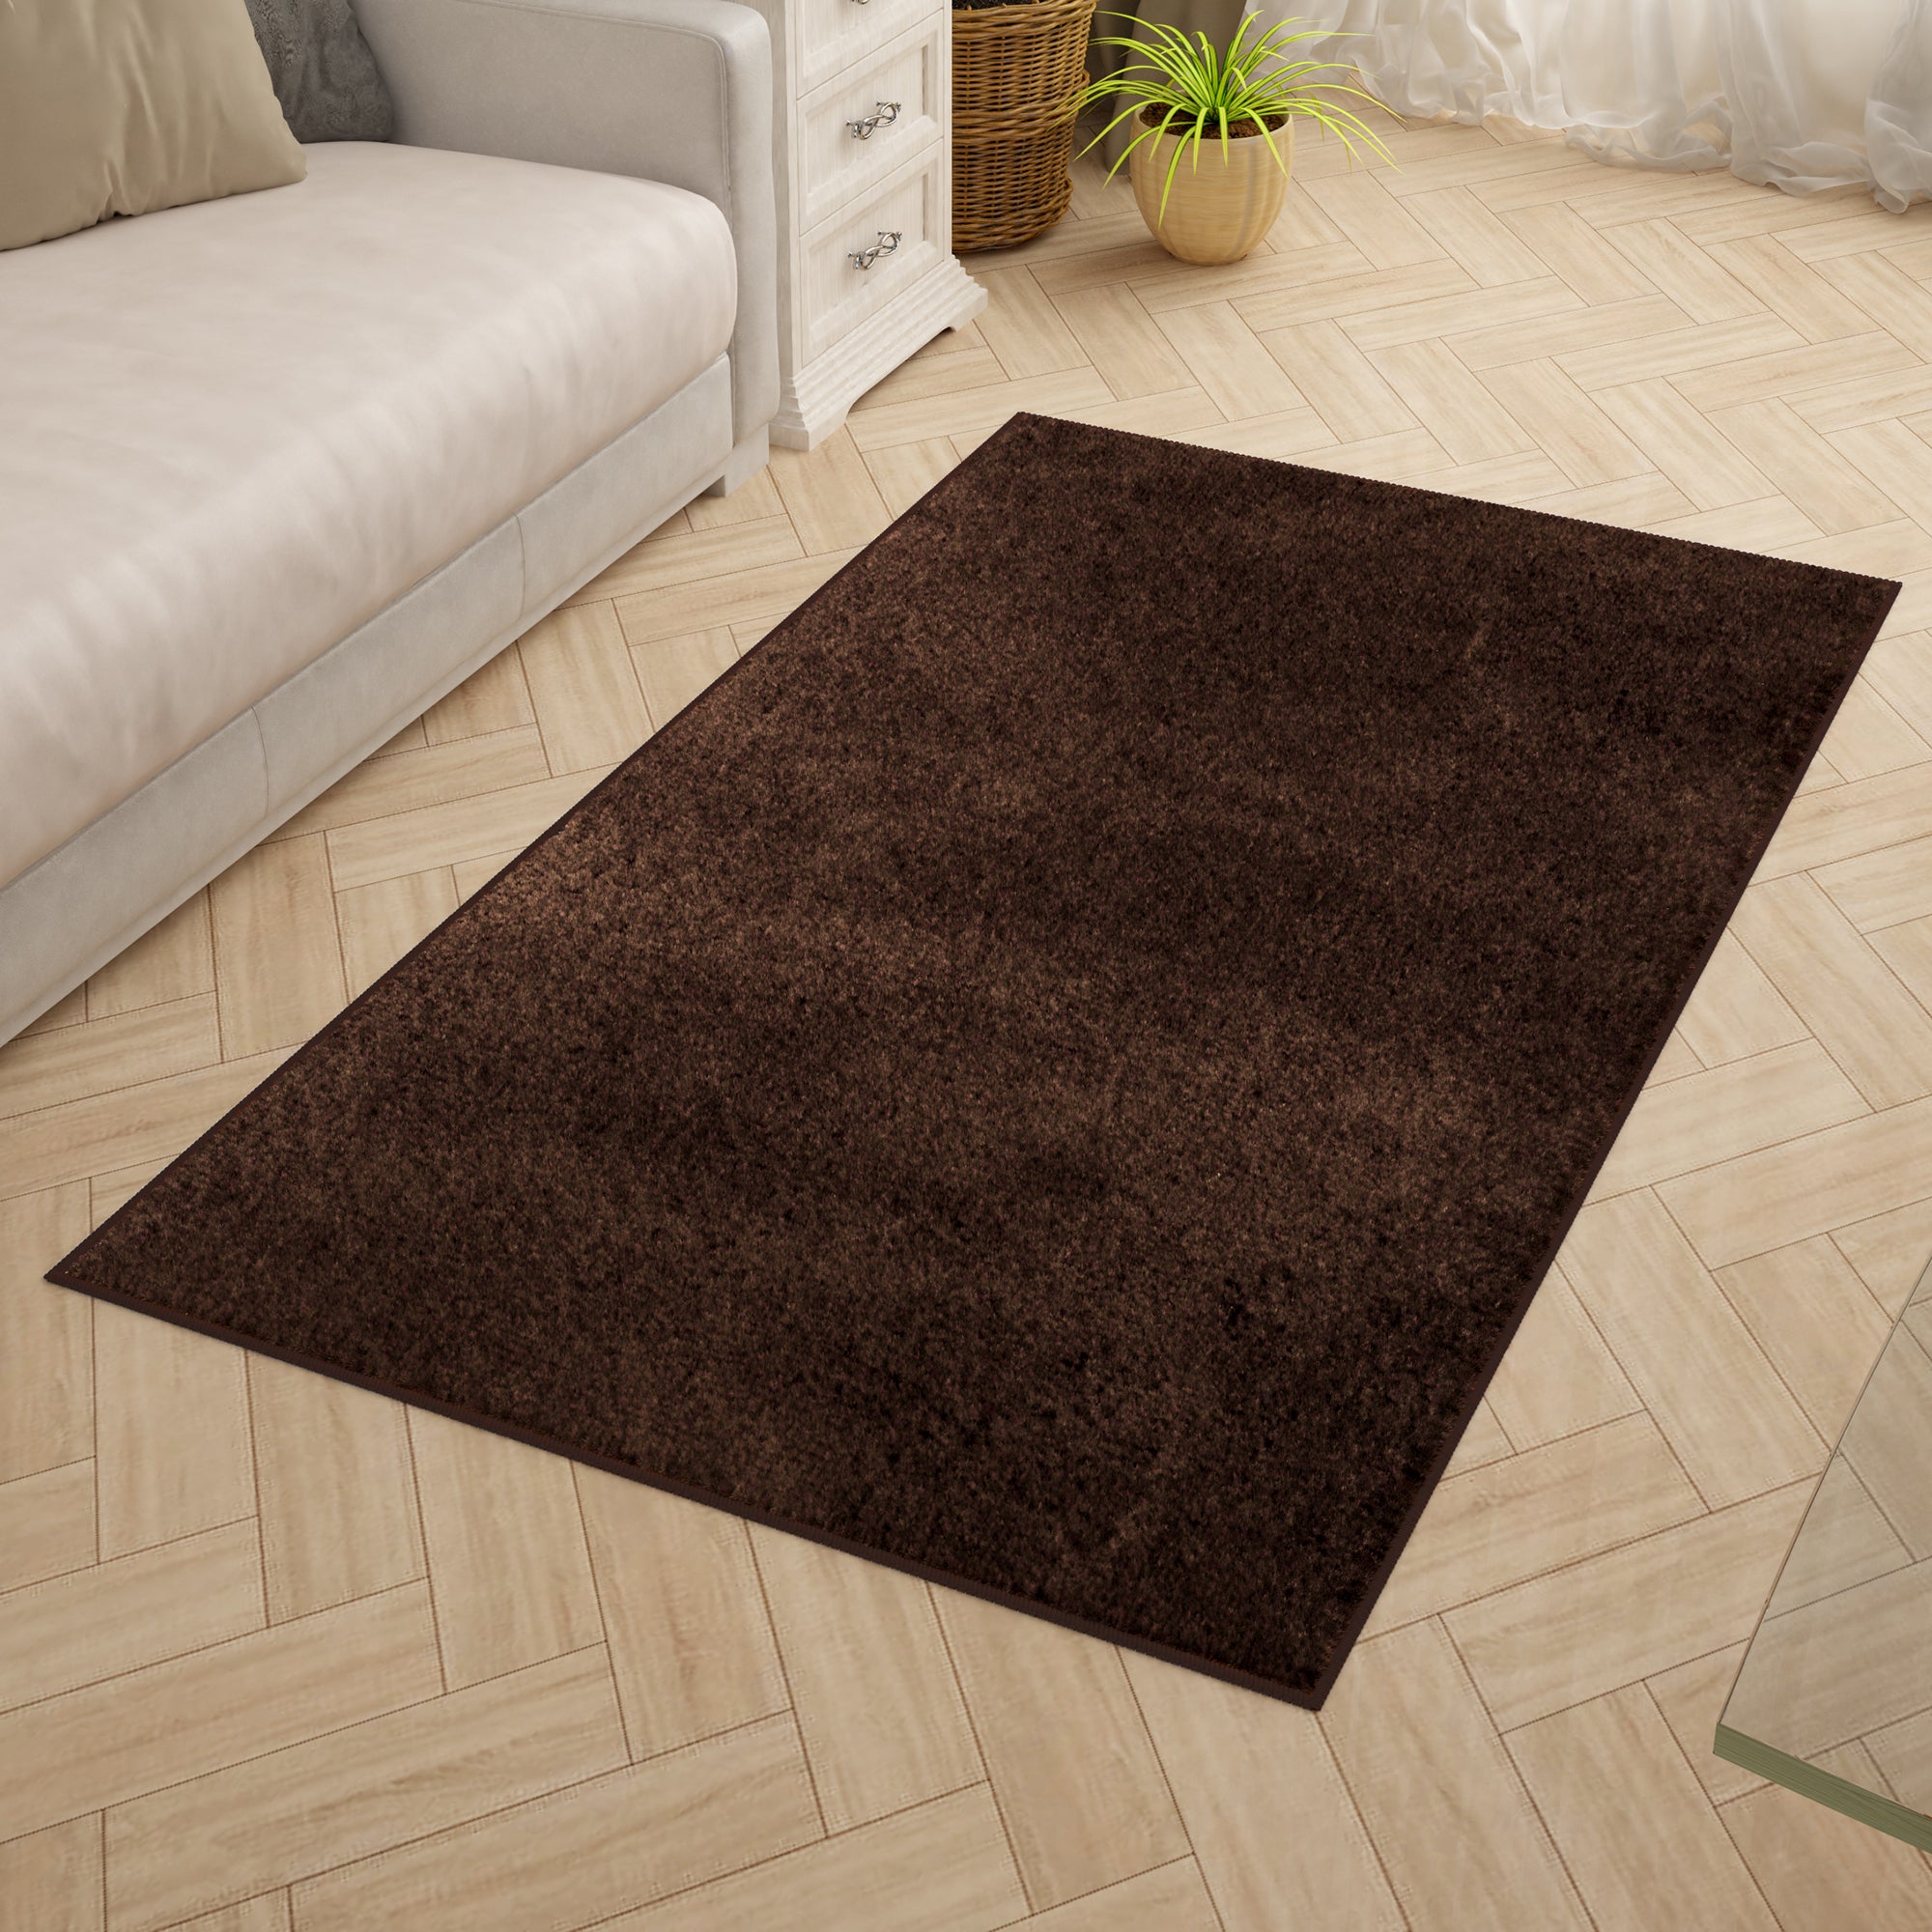 Solid Pattern Dark Brown Carpet for Living Room & Bedroom